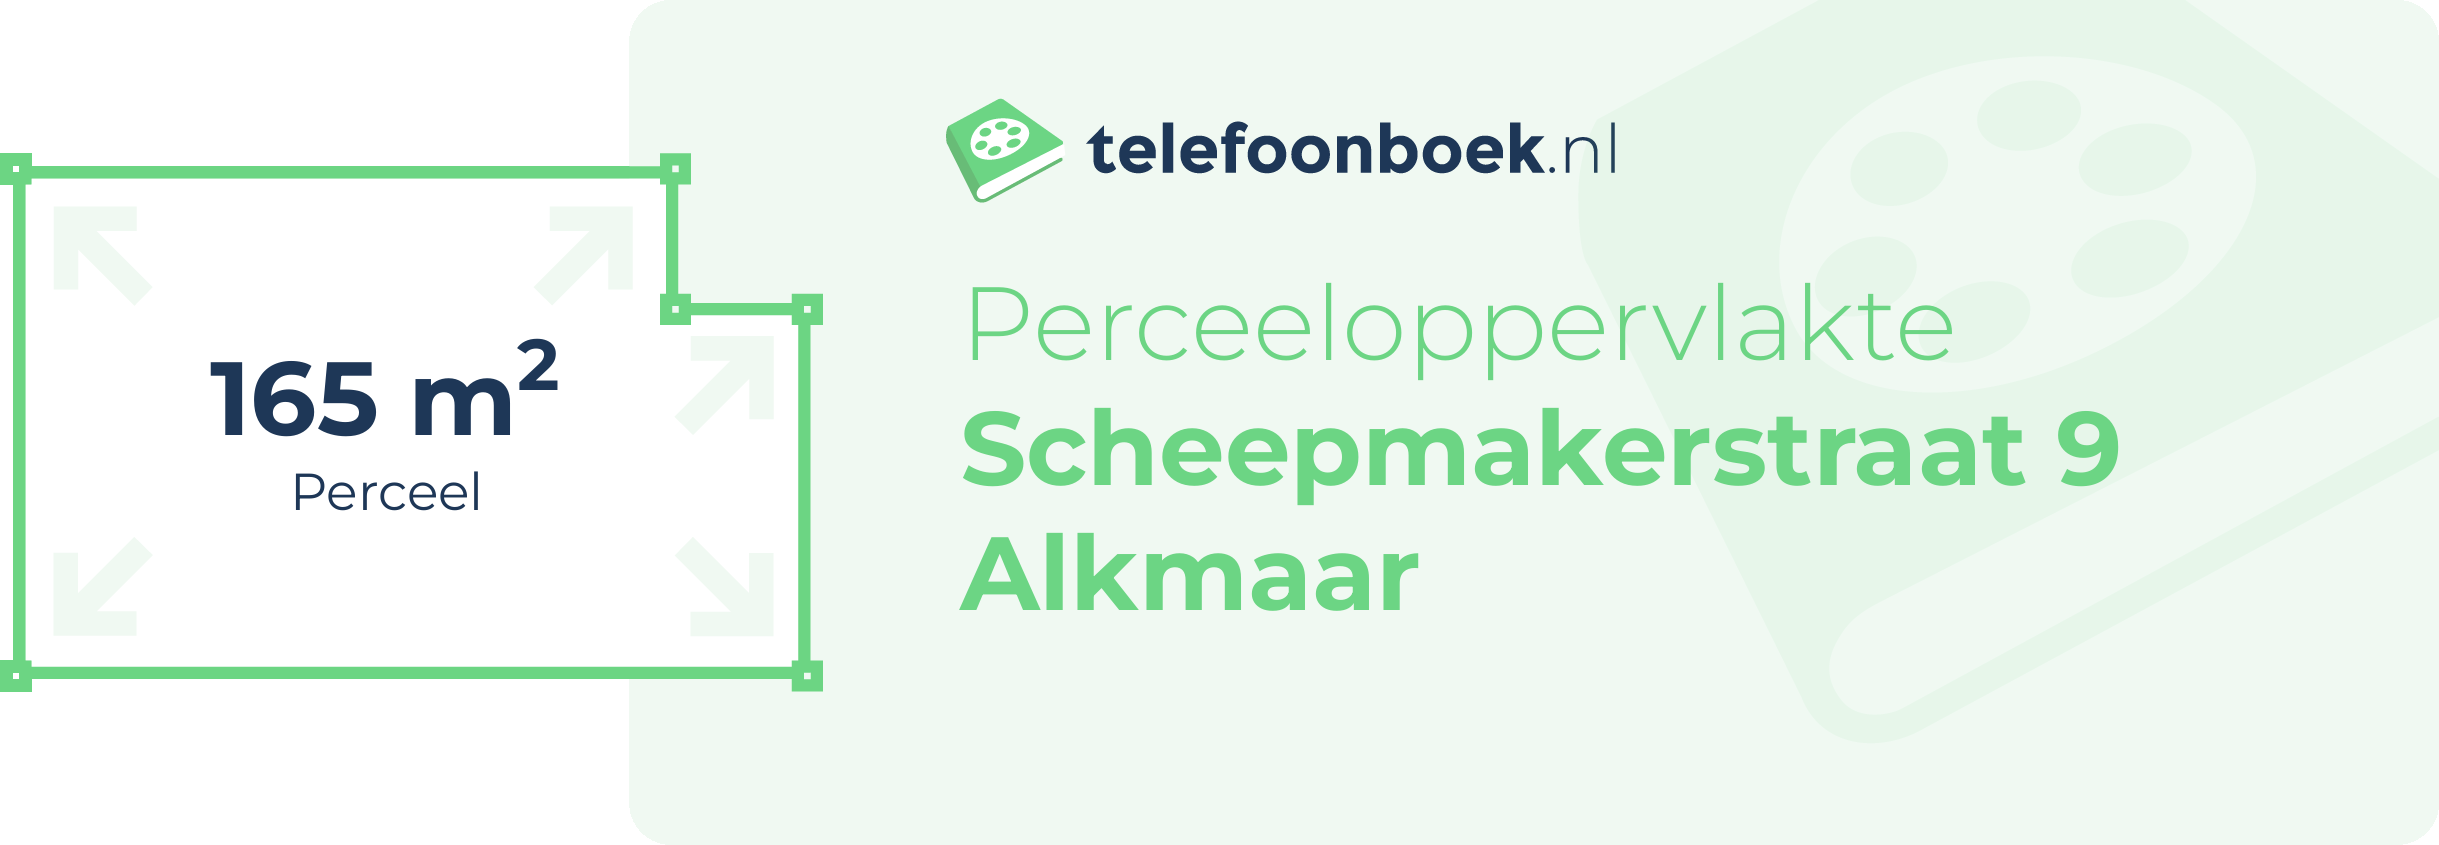 Perceeloppervlakte Scheepmakerstraat 9 Alkmaar